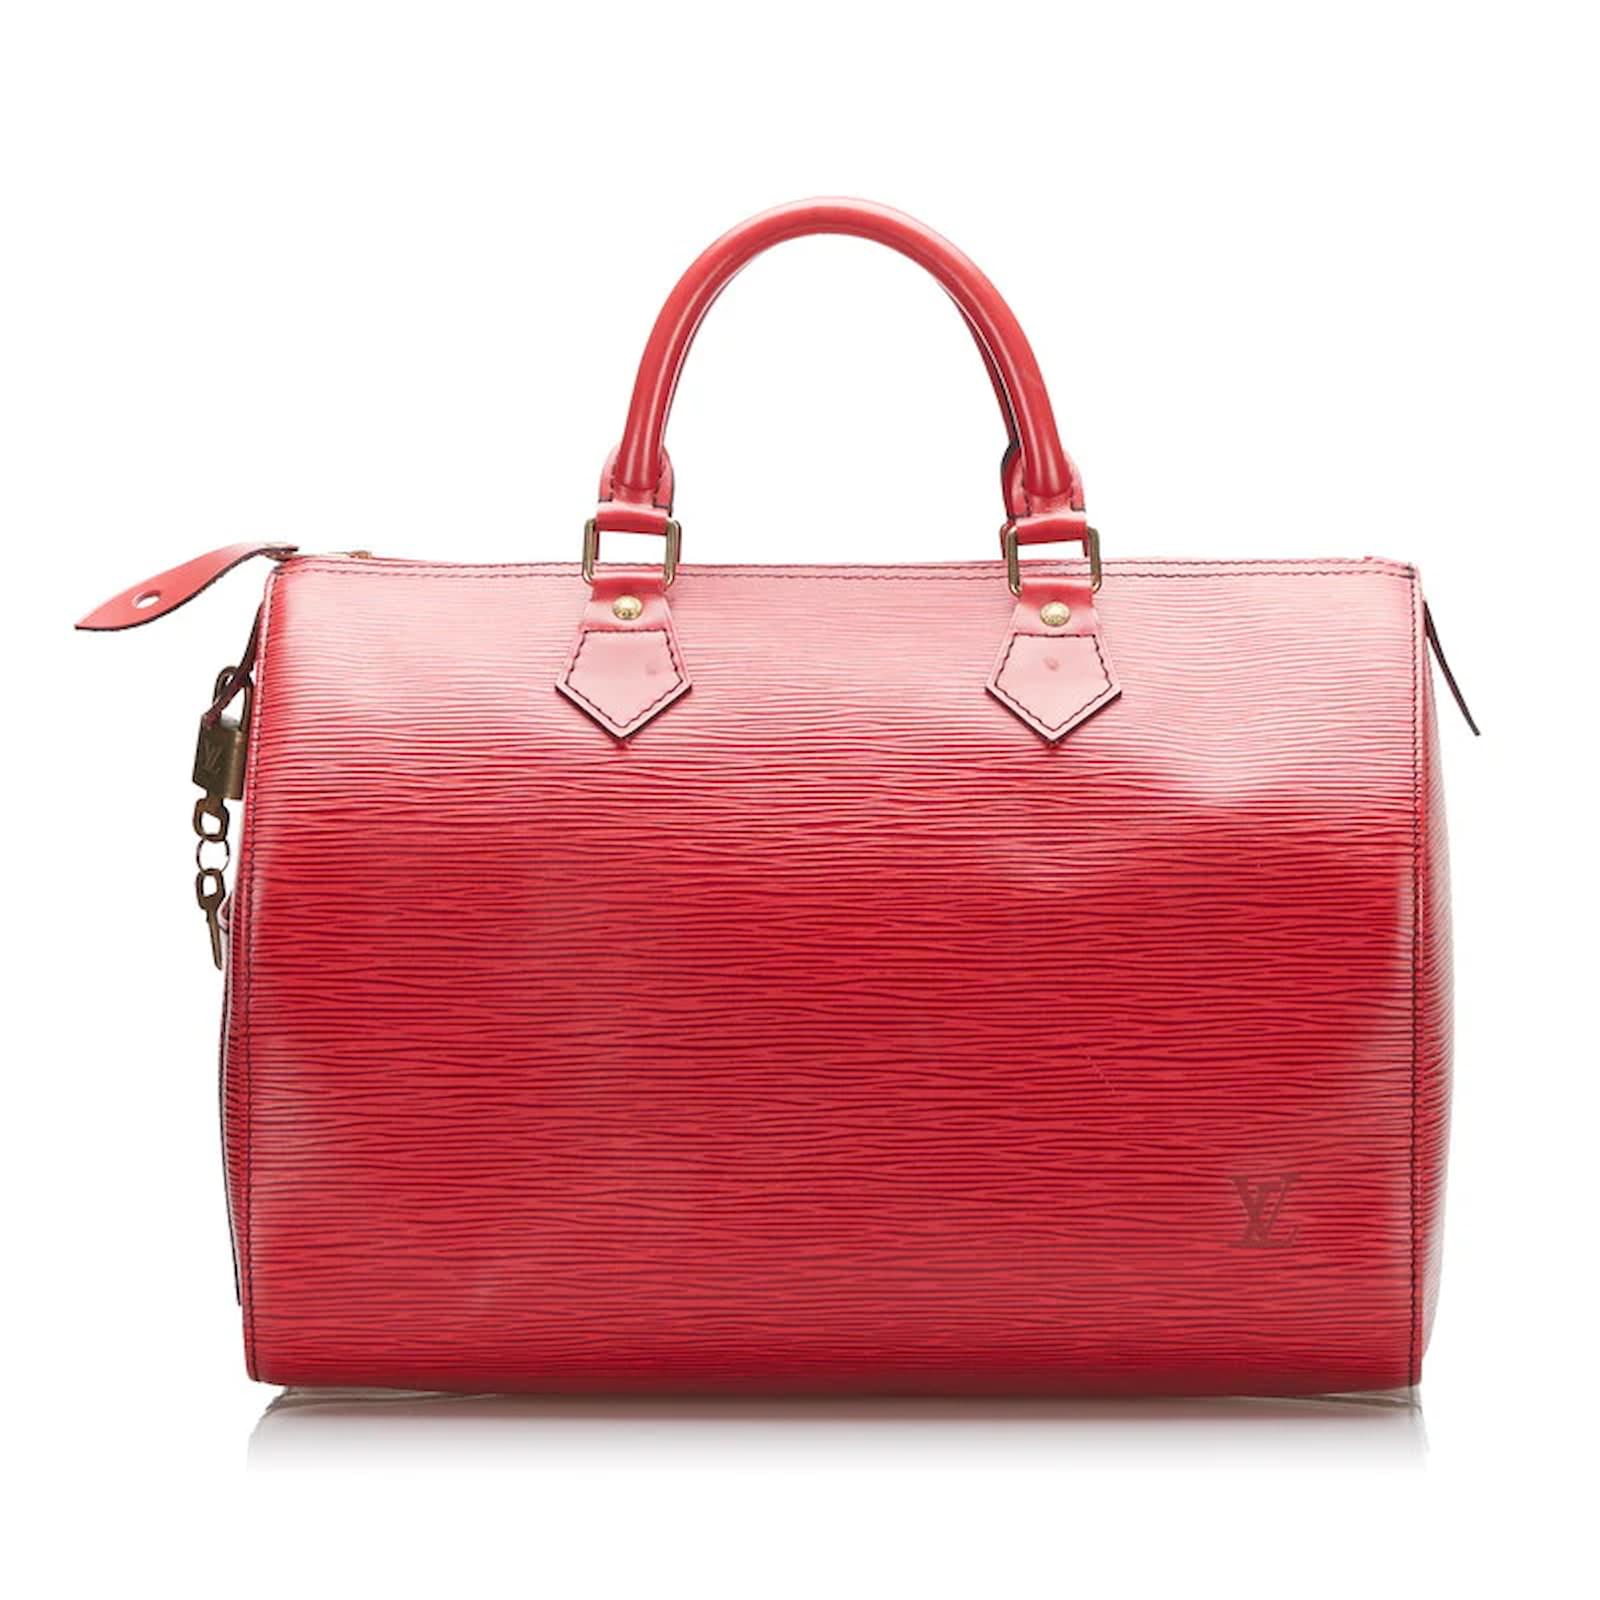 Louis Vuitton Red Empreinte Speedy 30 Leather Pony-style calfskin